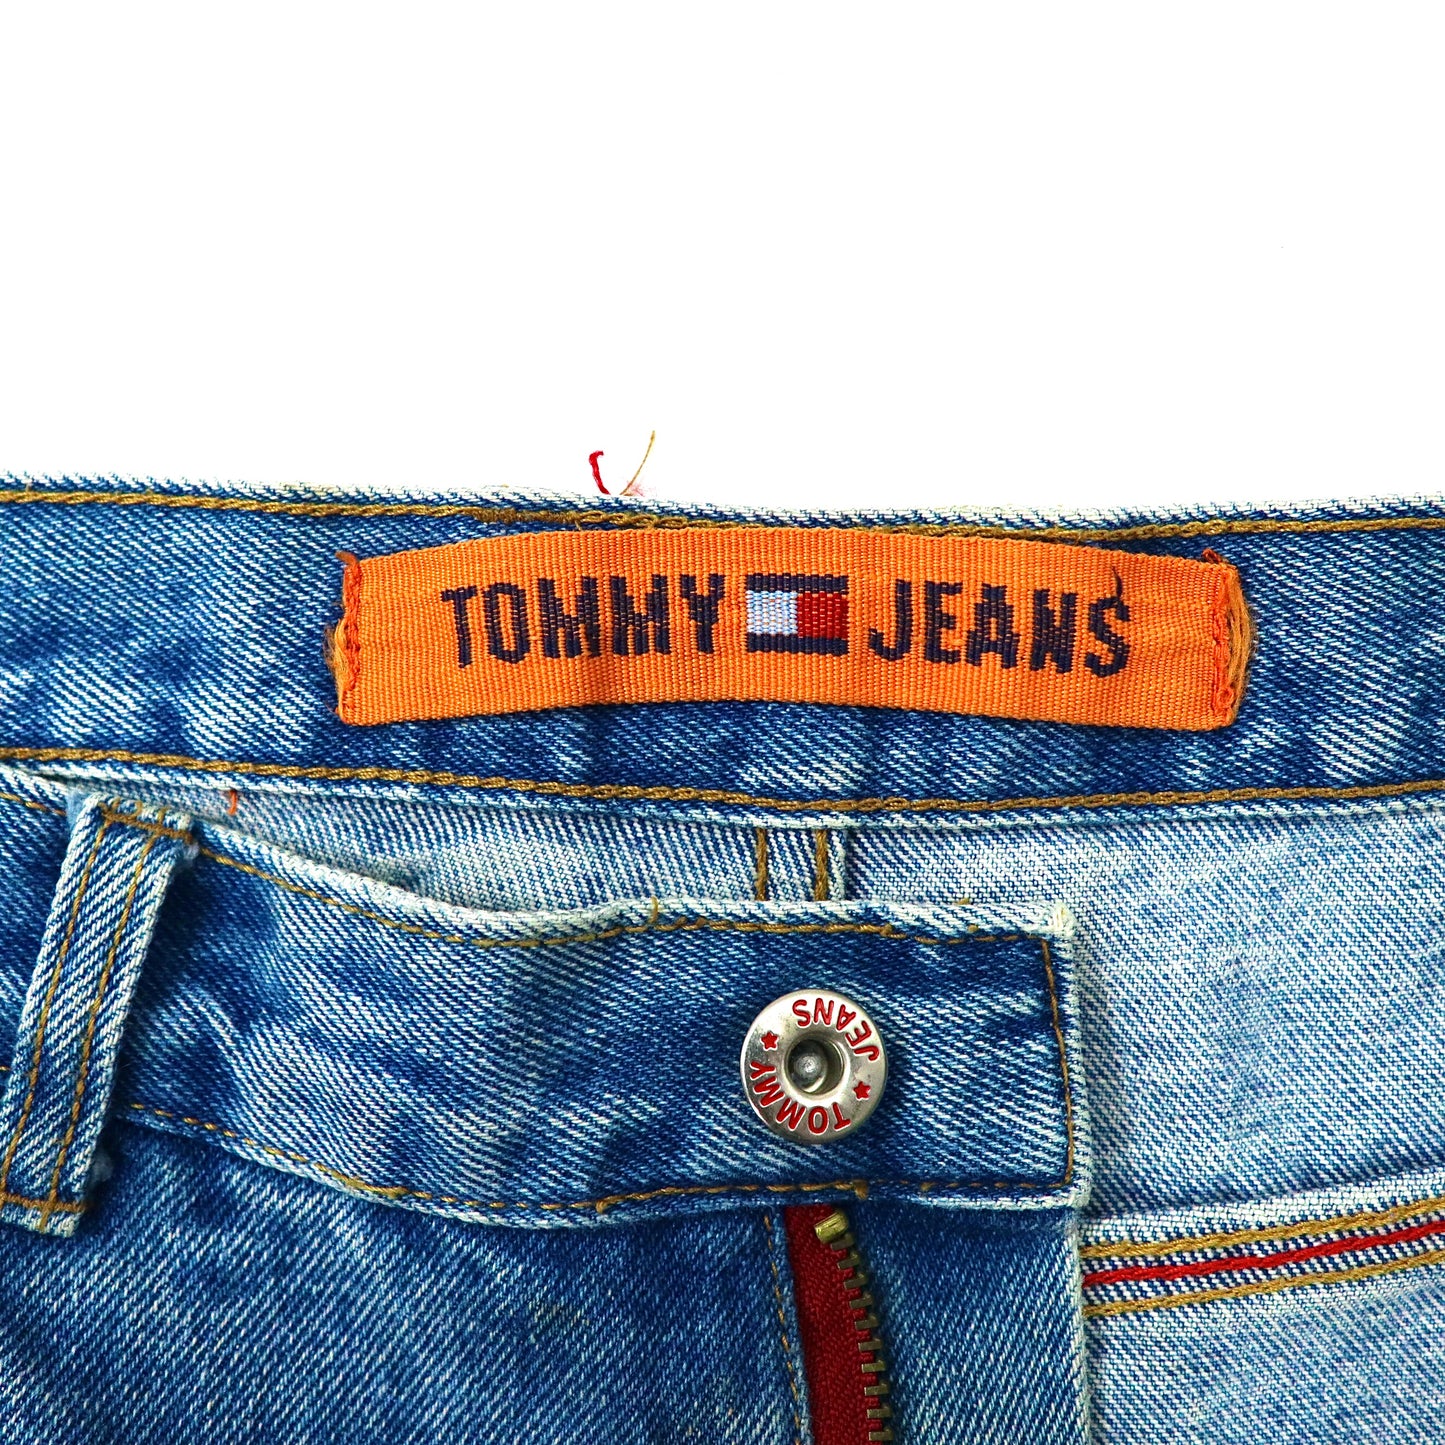 TOMMY JEANS ワイド バギーデニムパンツ 36 ブルー 90年代